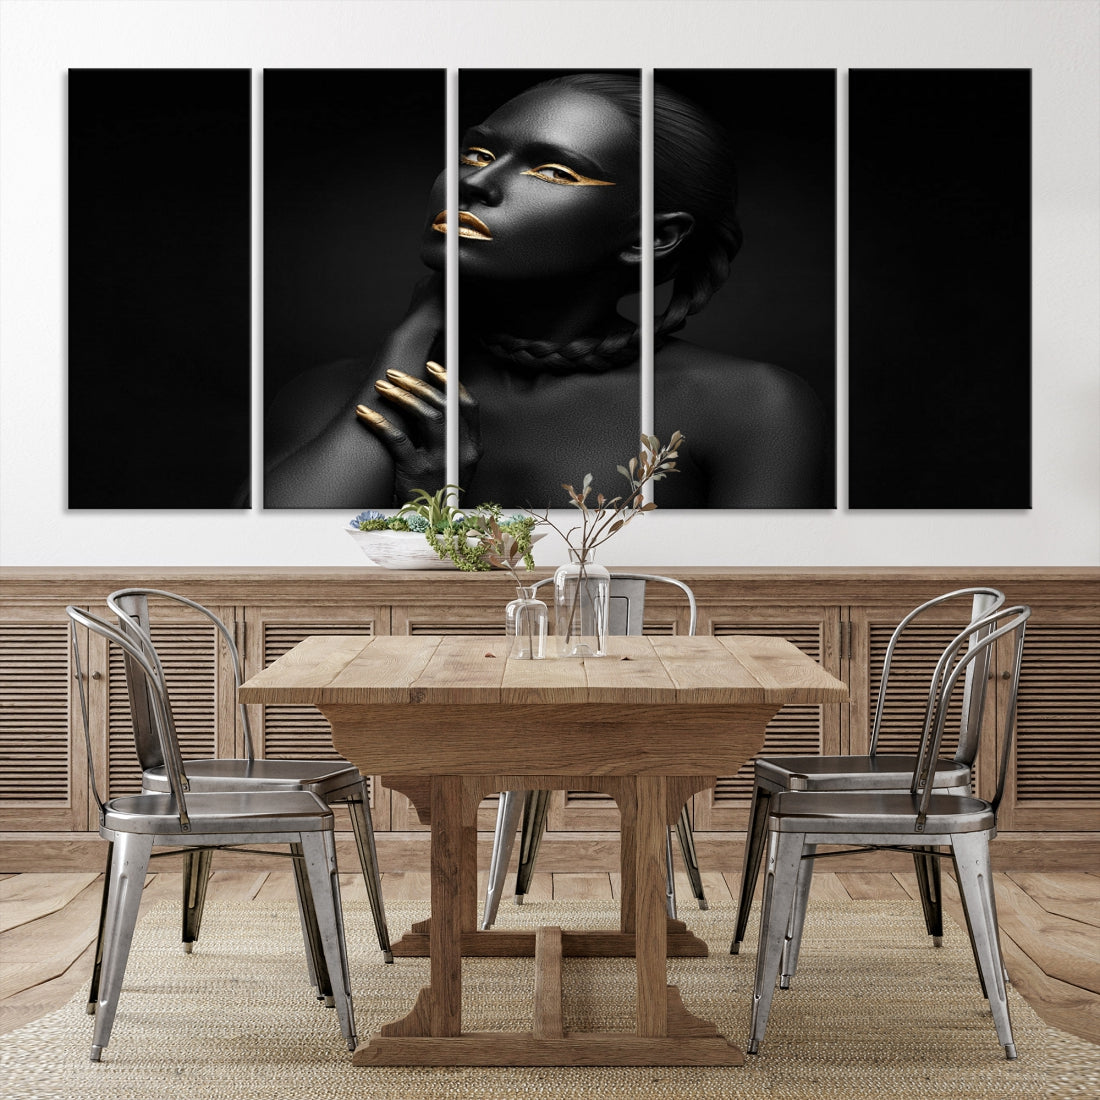 Black Woman Makeup Wall Art Print Modern Canvas Fashion Art Print